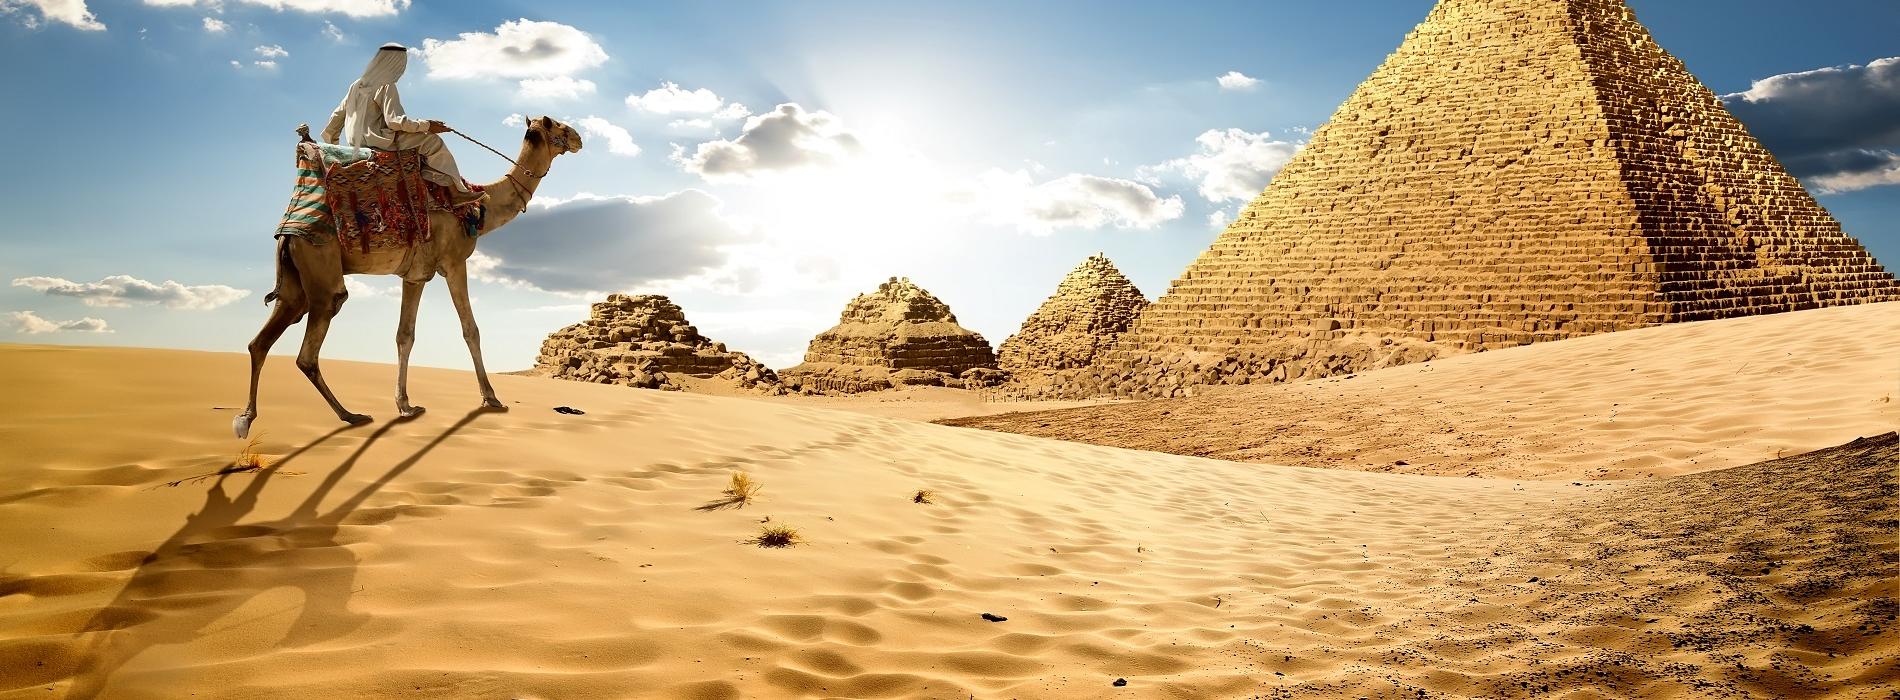 Afrika Aegypten Pyramiden Kamel